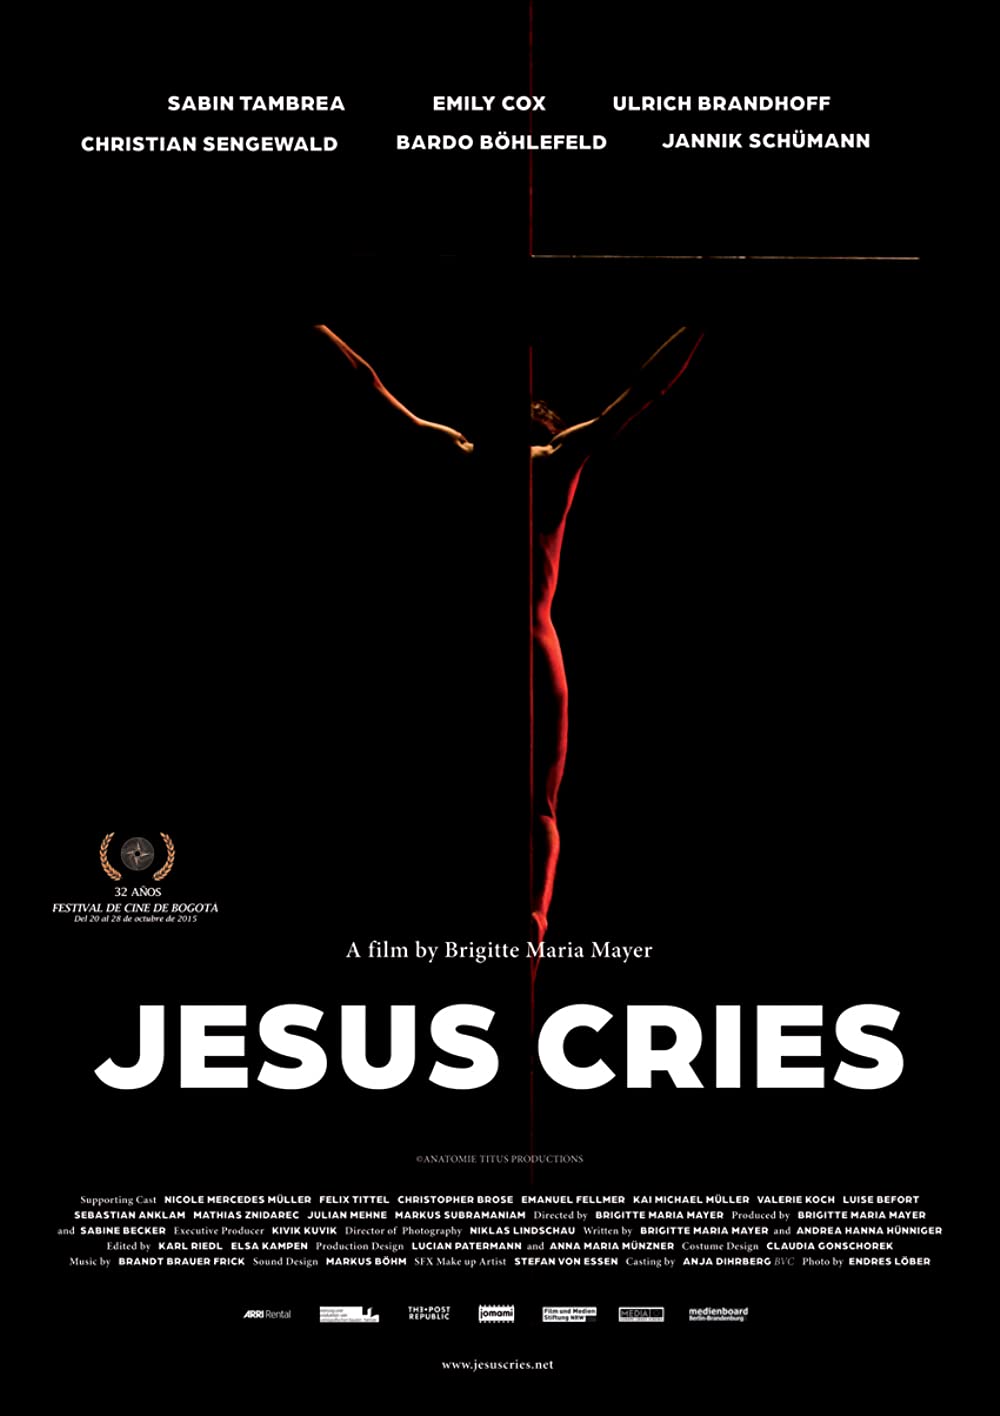 Filmbeschreibung zu Jesus Cries